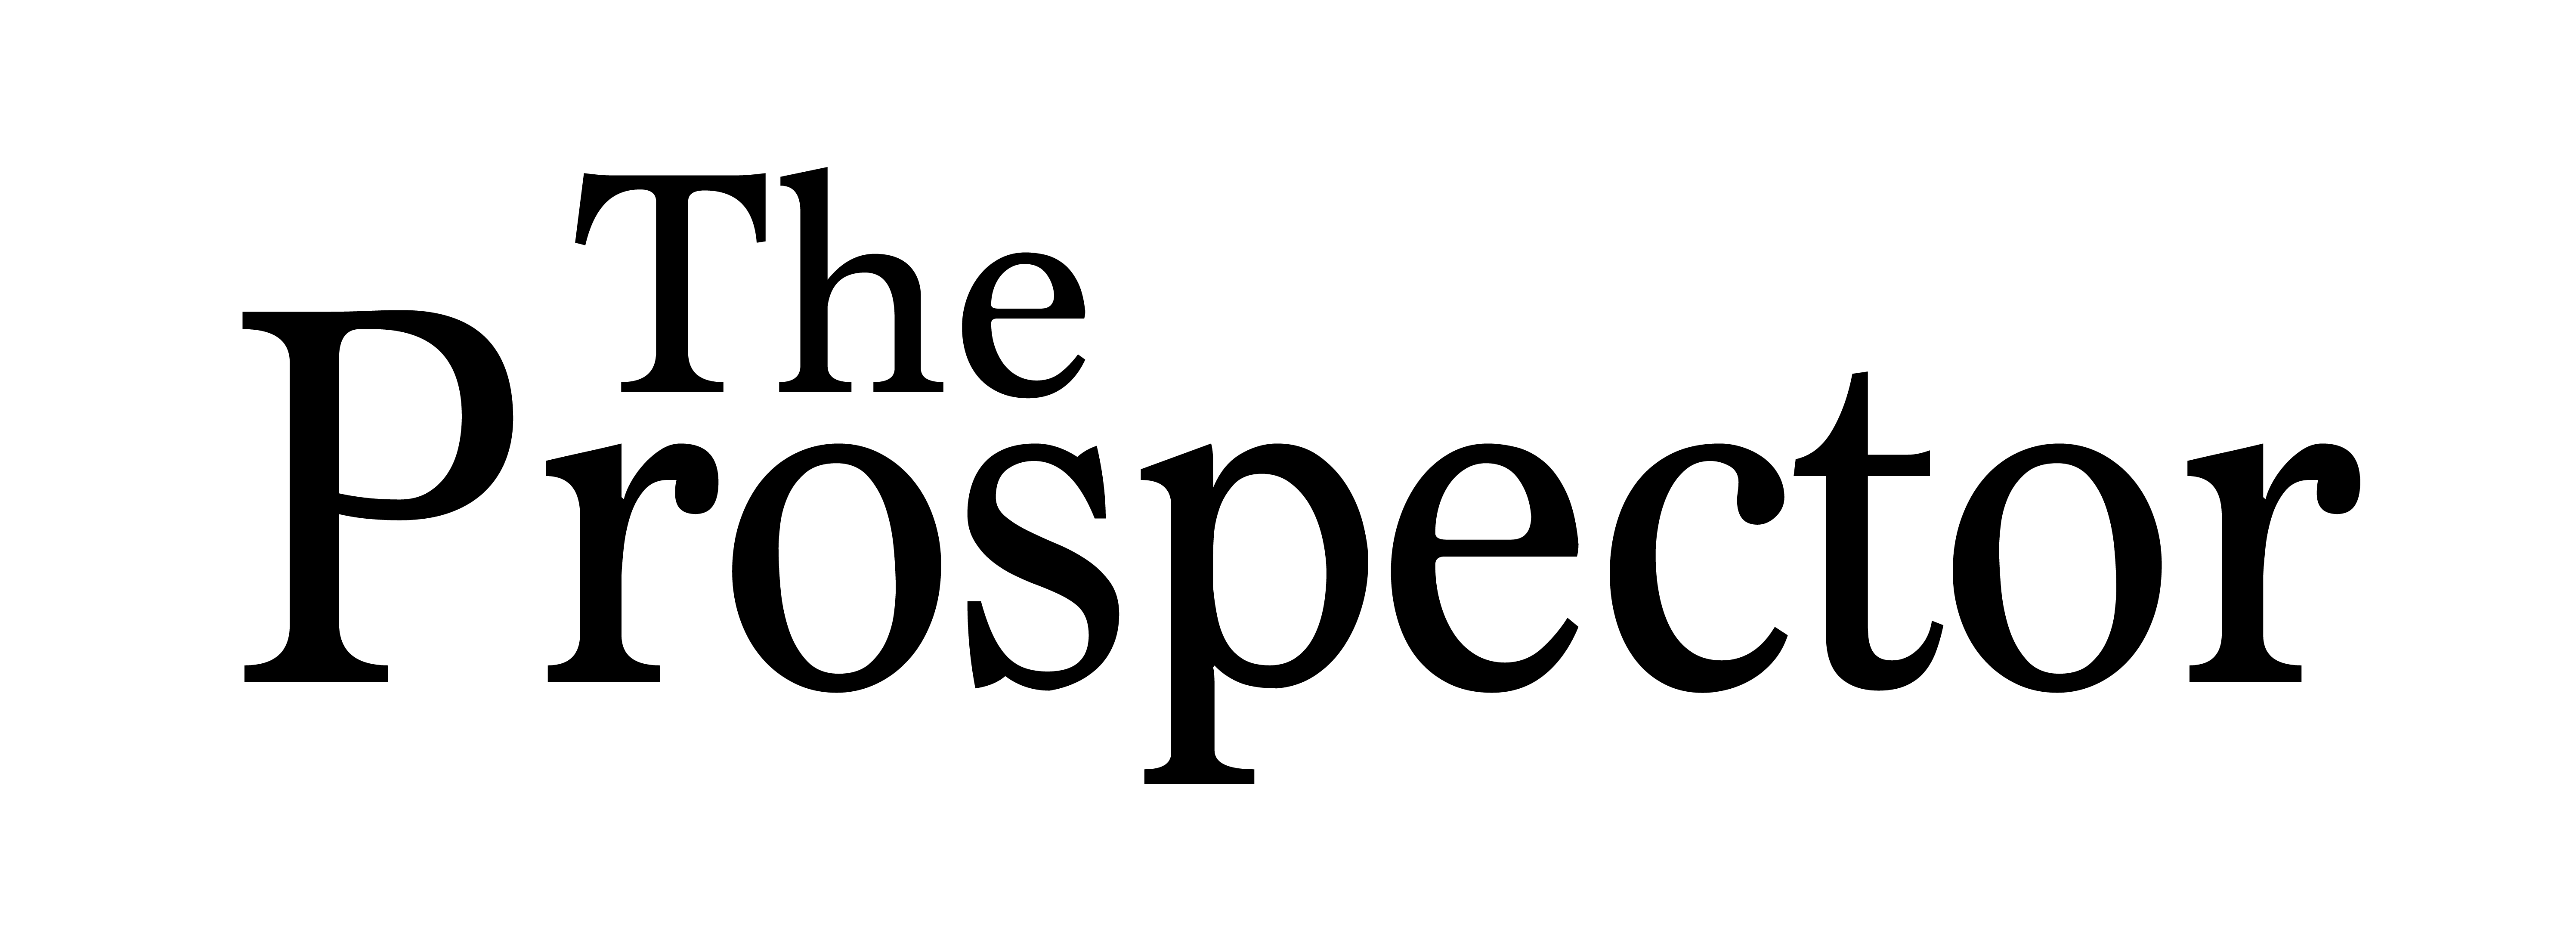 The Prospector logo